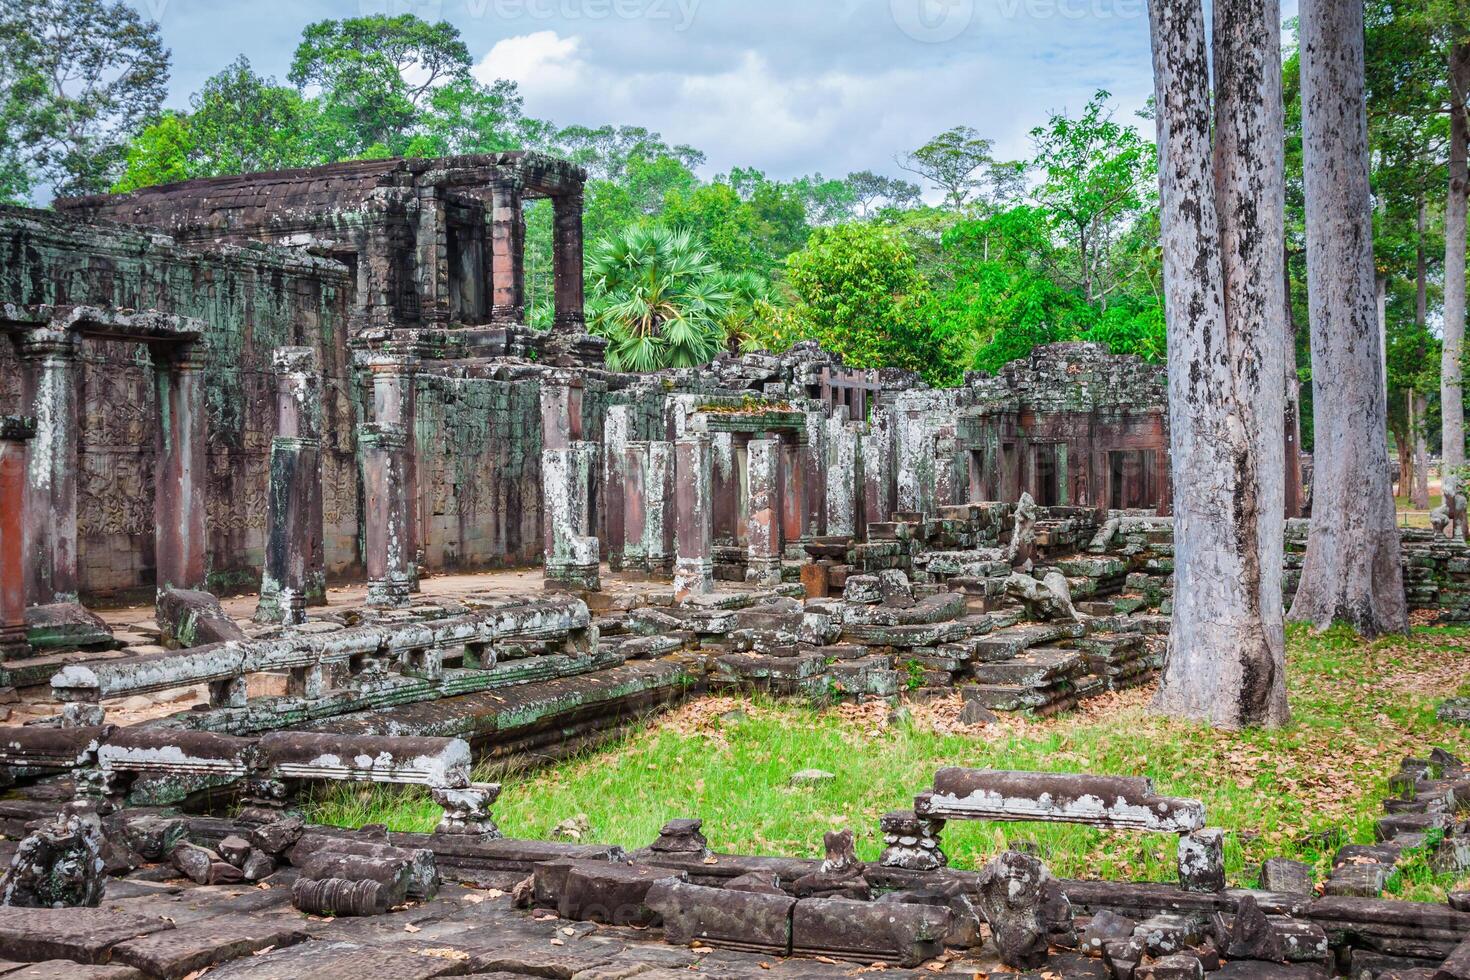 Angkor Thom Cambodia. Bayon khmer temple on Angkor Wat historical place photo